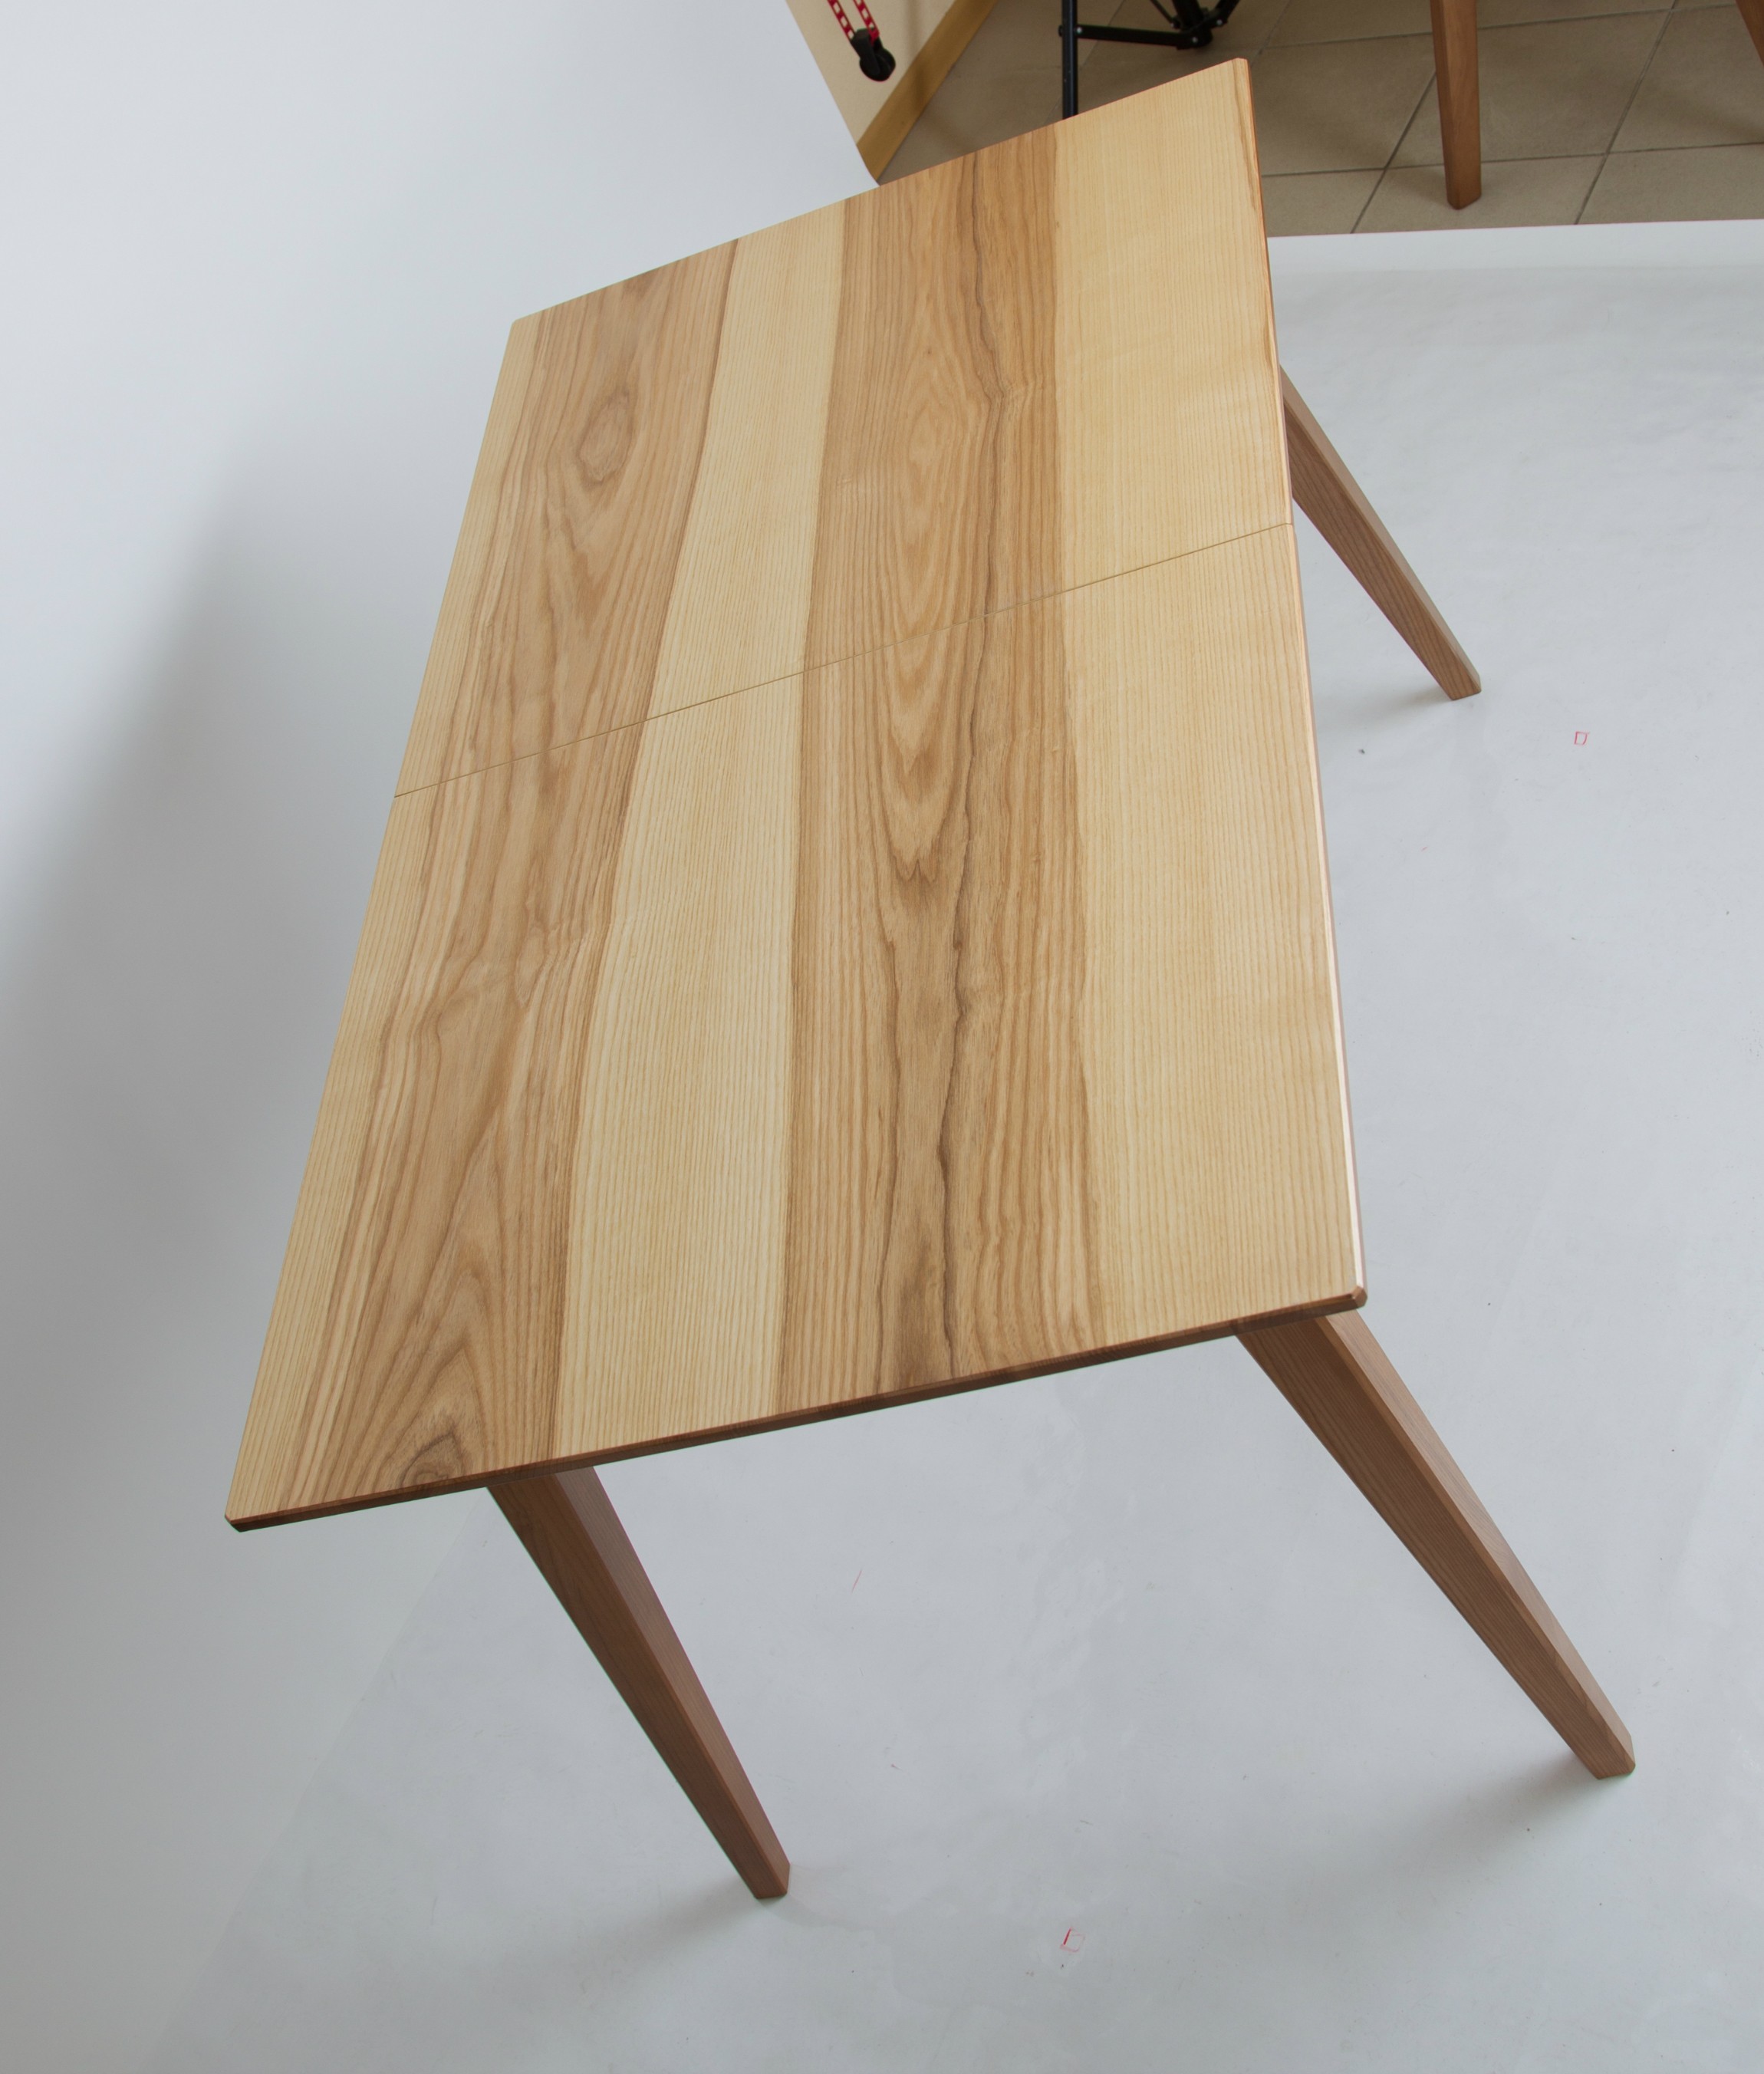 Деревянный стол раскладной Рондо 130(+40)*75